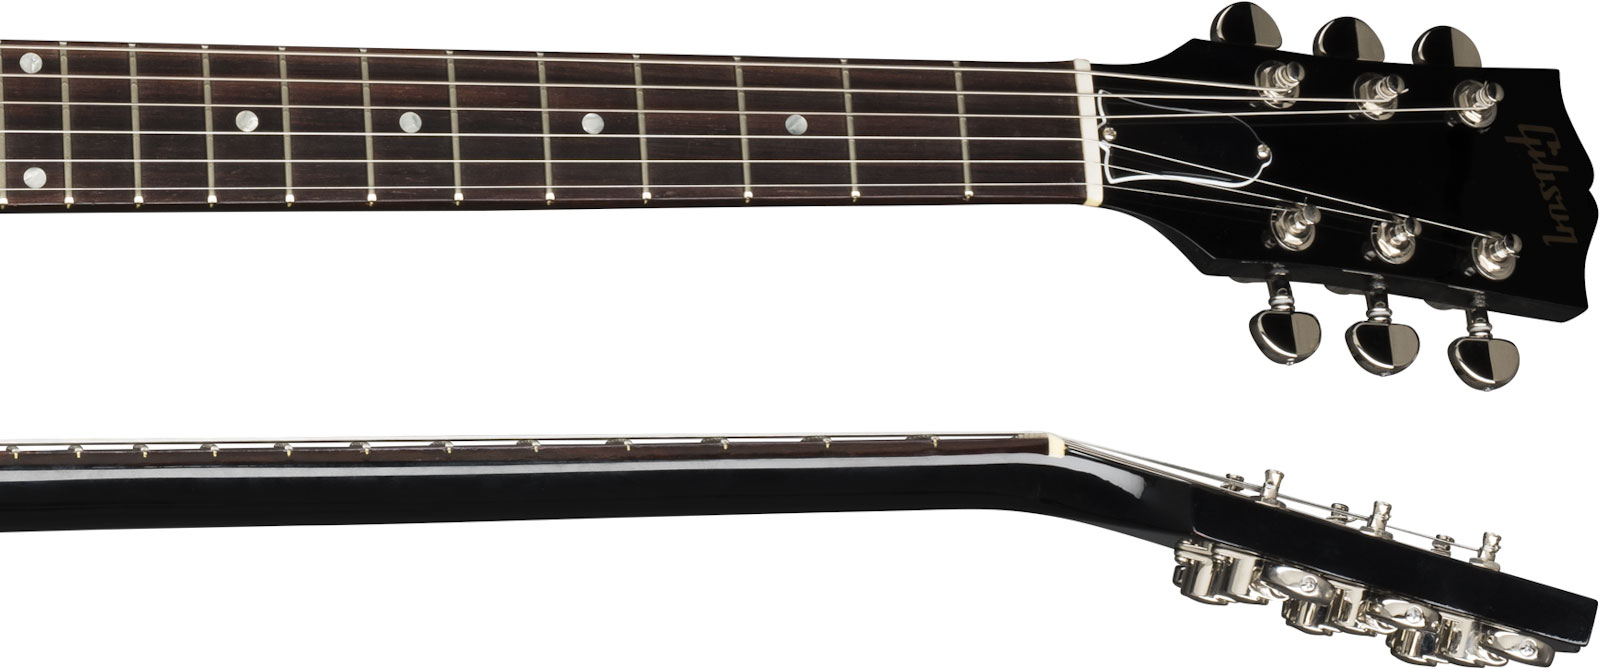 Gibson Es-335 Dot P-90 2019 Ht Rw - Ebony - Semi-Hollow E-Gitarre - Variation 3